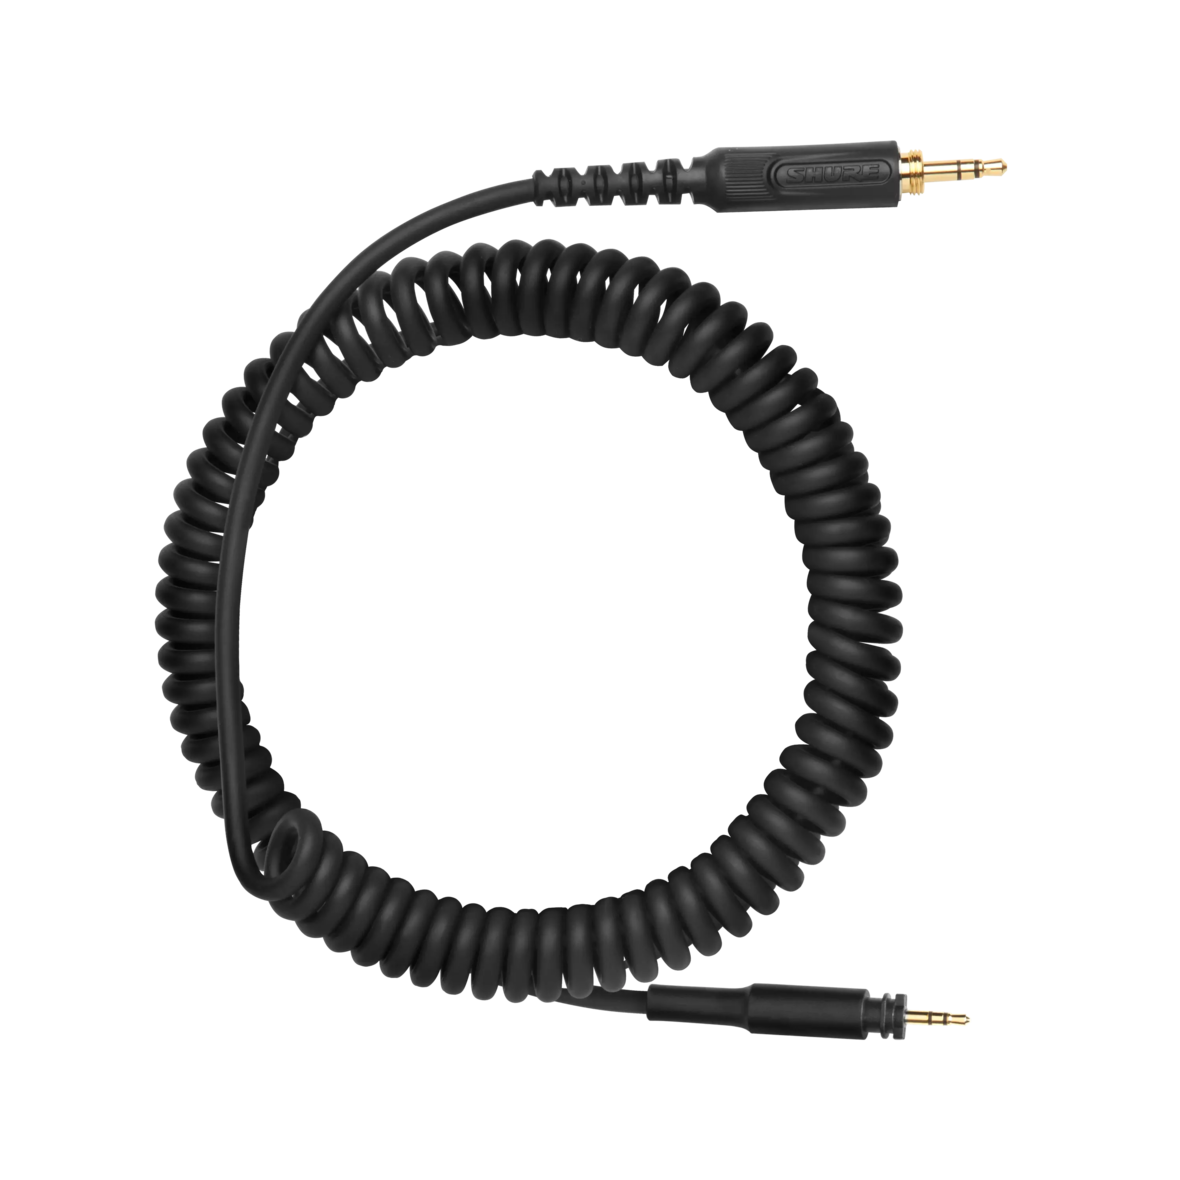 SRH-CABLE-COILED - Câble spiralé avec jack 3,5mm pour les casques